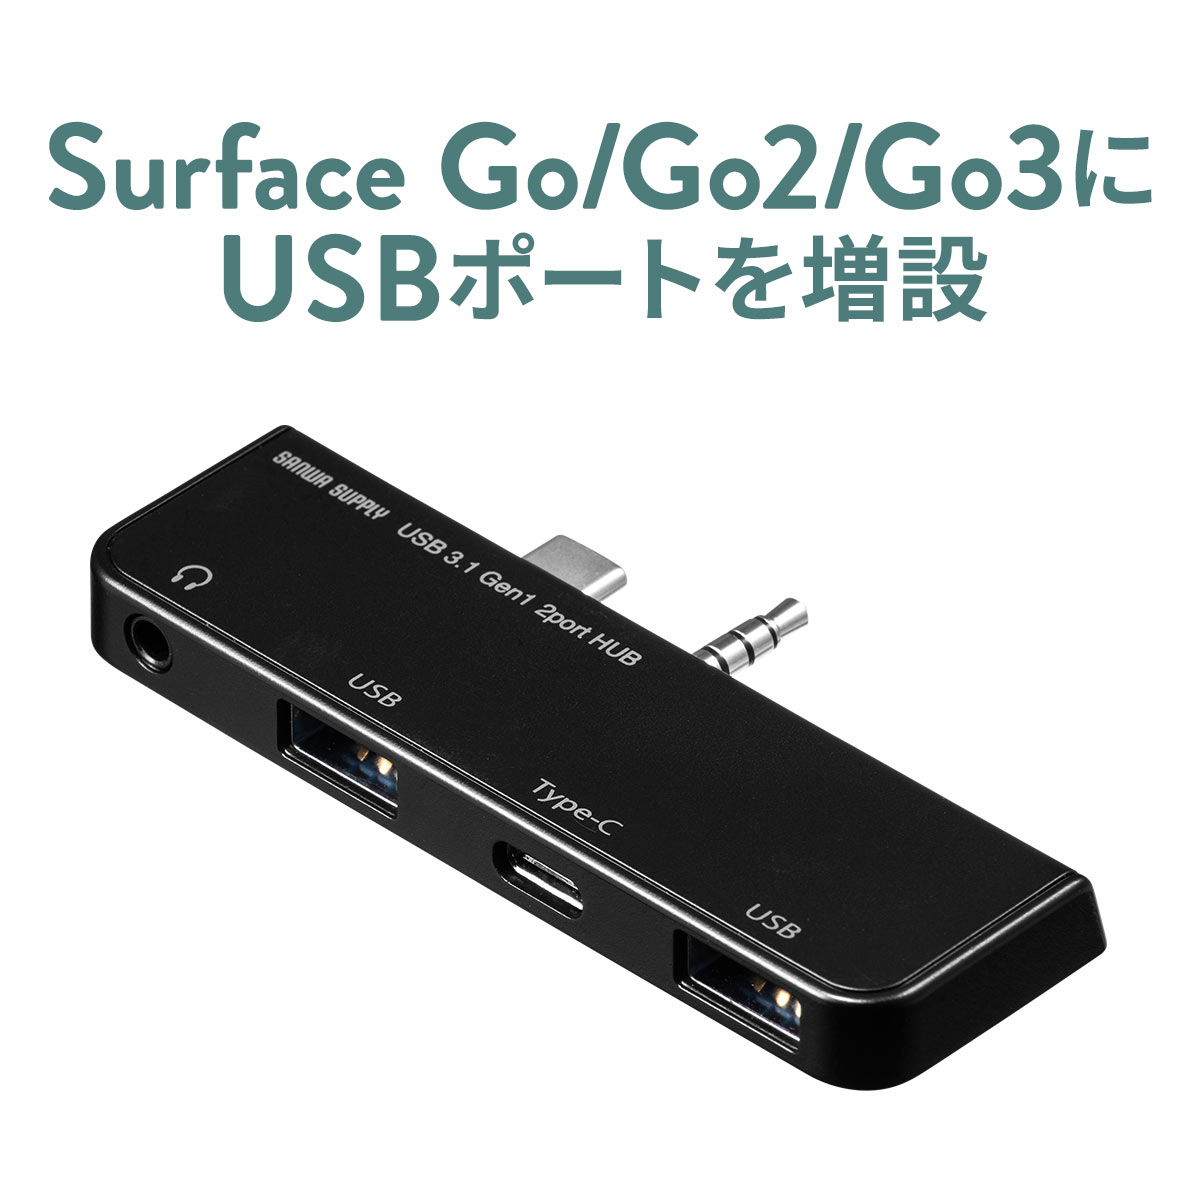 Surface Go・Go2・Go3専用 USB Type C ハブ USB3.1/3.0ハブ USBハブ 3.5mmジャック サーフェス ゴー専用 Type-C タイプC USB A USB3.1 Gen1 3.5mm4極ミニジャック ヘッドホンジャック ドッキングステーション バスパワー